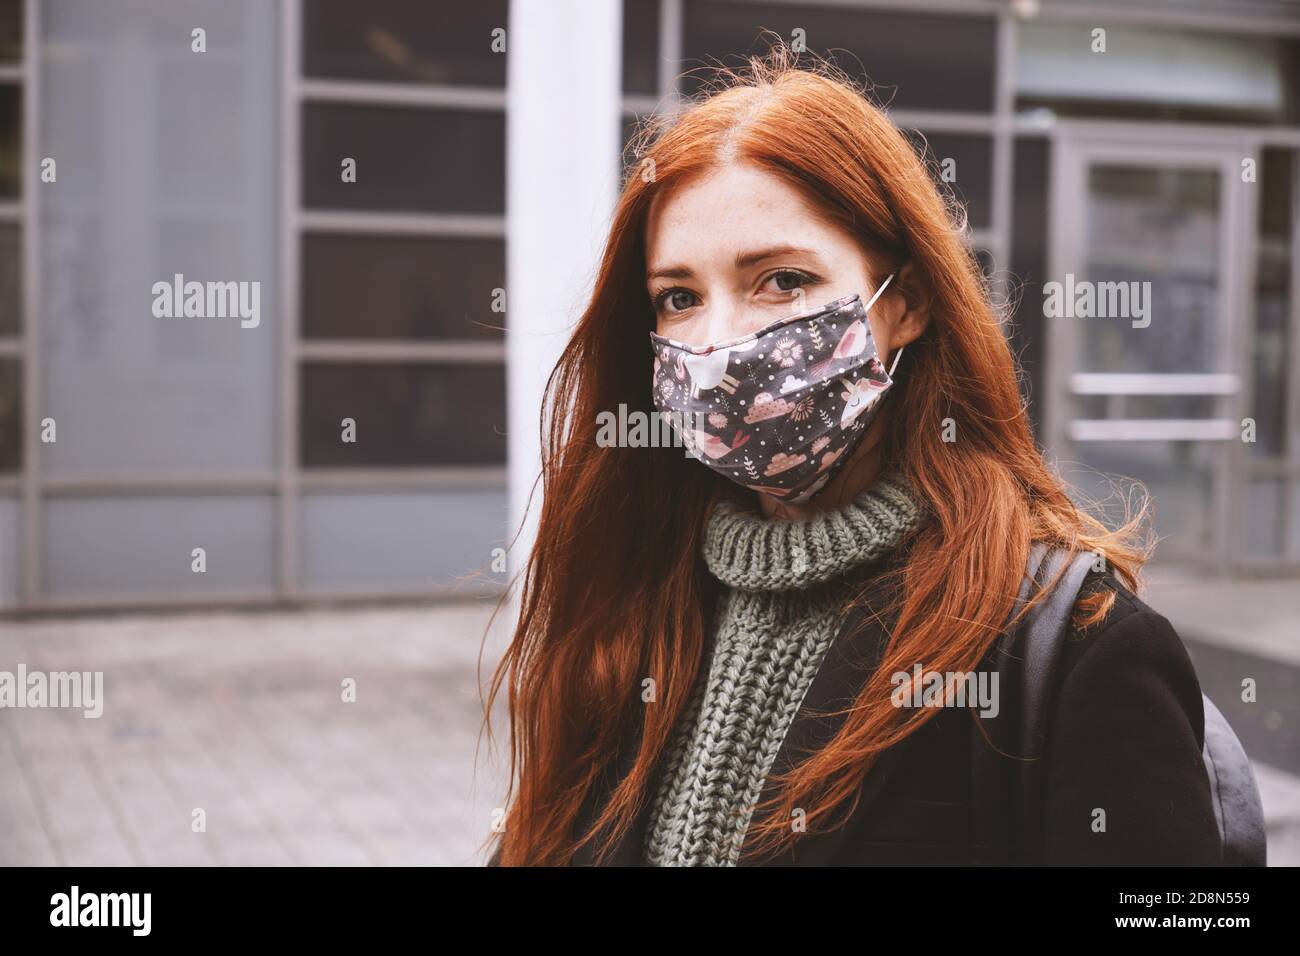 giovane donna che indossa una maschera facciale in tessuto fatta in casa all'aperto città - nuovo concetto normale di pandemia del virus corona-19 - stile di vita della gente reale in inverno Foto Stock